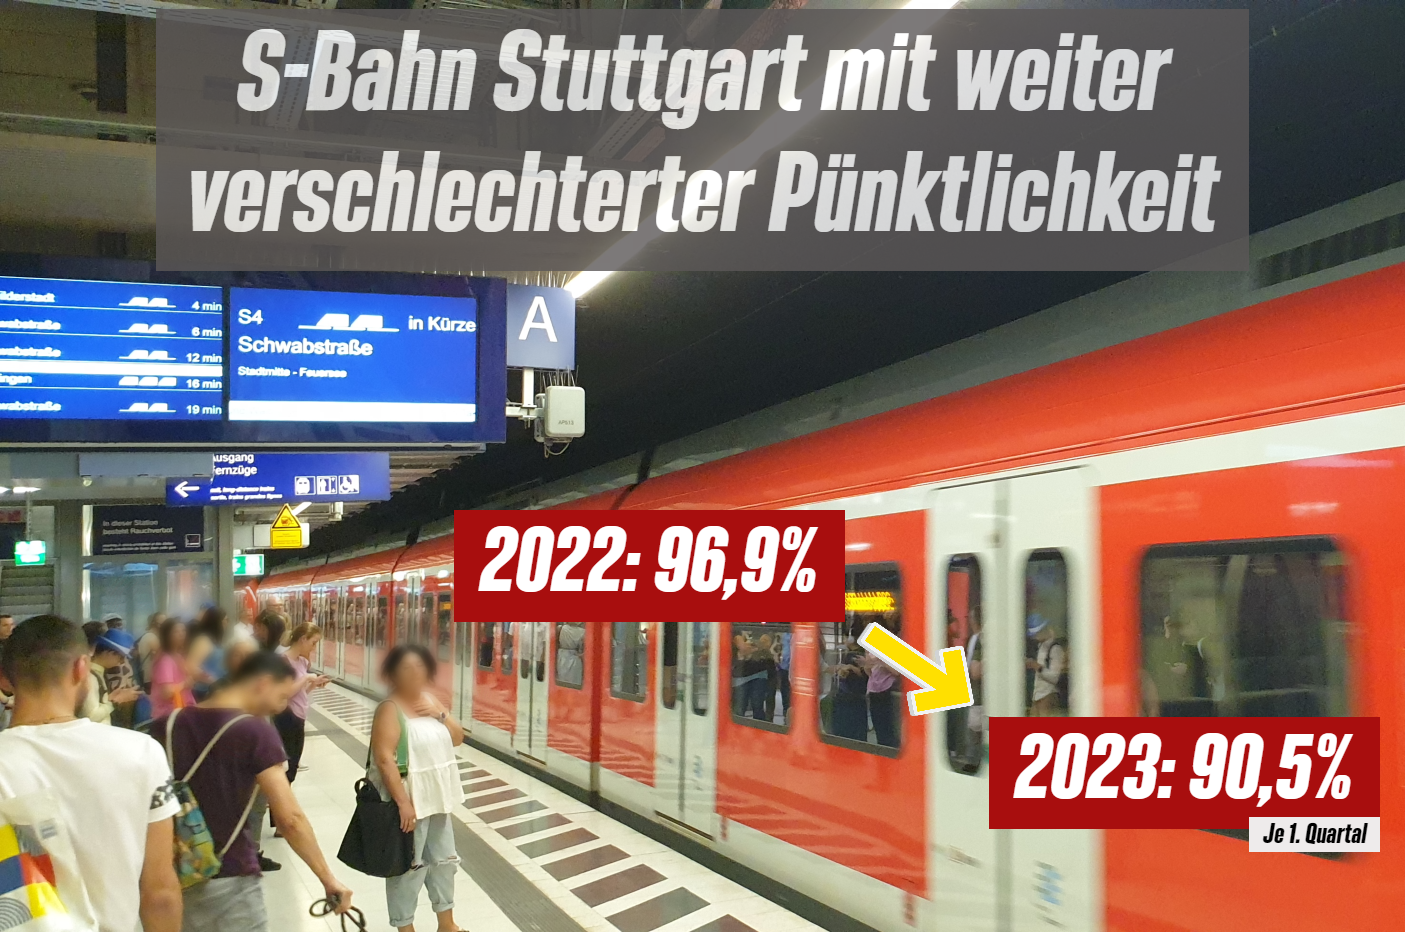 Sharepic S-Bahn Pünktlichkeit